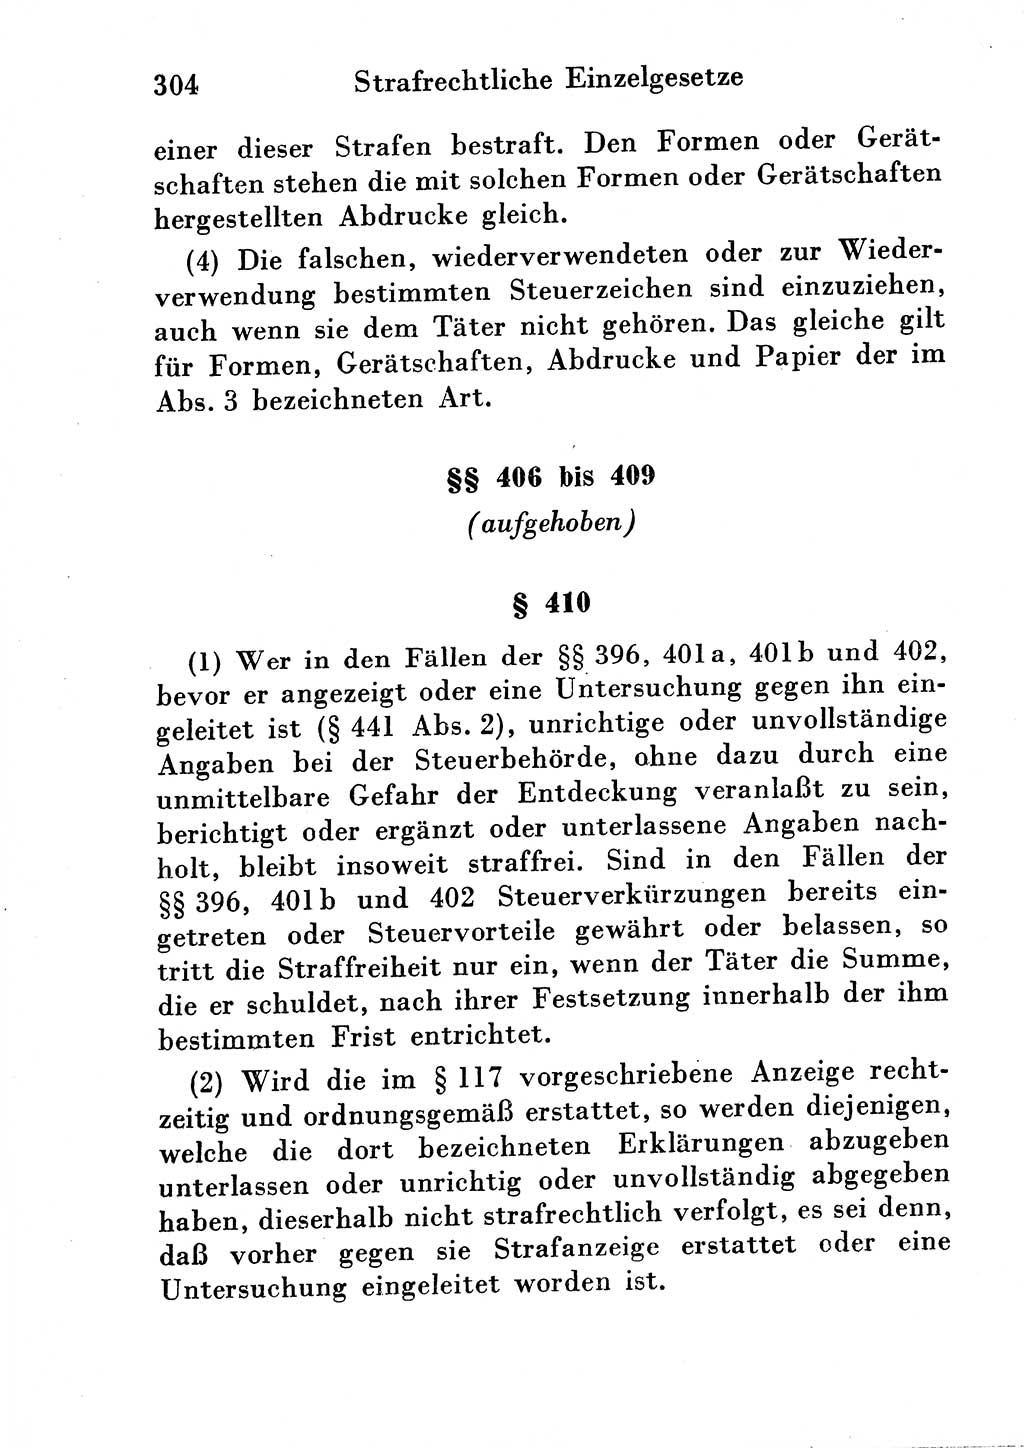 Strafgesetzbuch (StGB) und andere Strafgesetze [Deutsche Demokratische Republik (DDR)] 1954, Seite 304 (StGB Strafges. DDR 1954, S. 304)